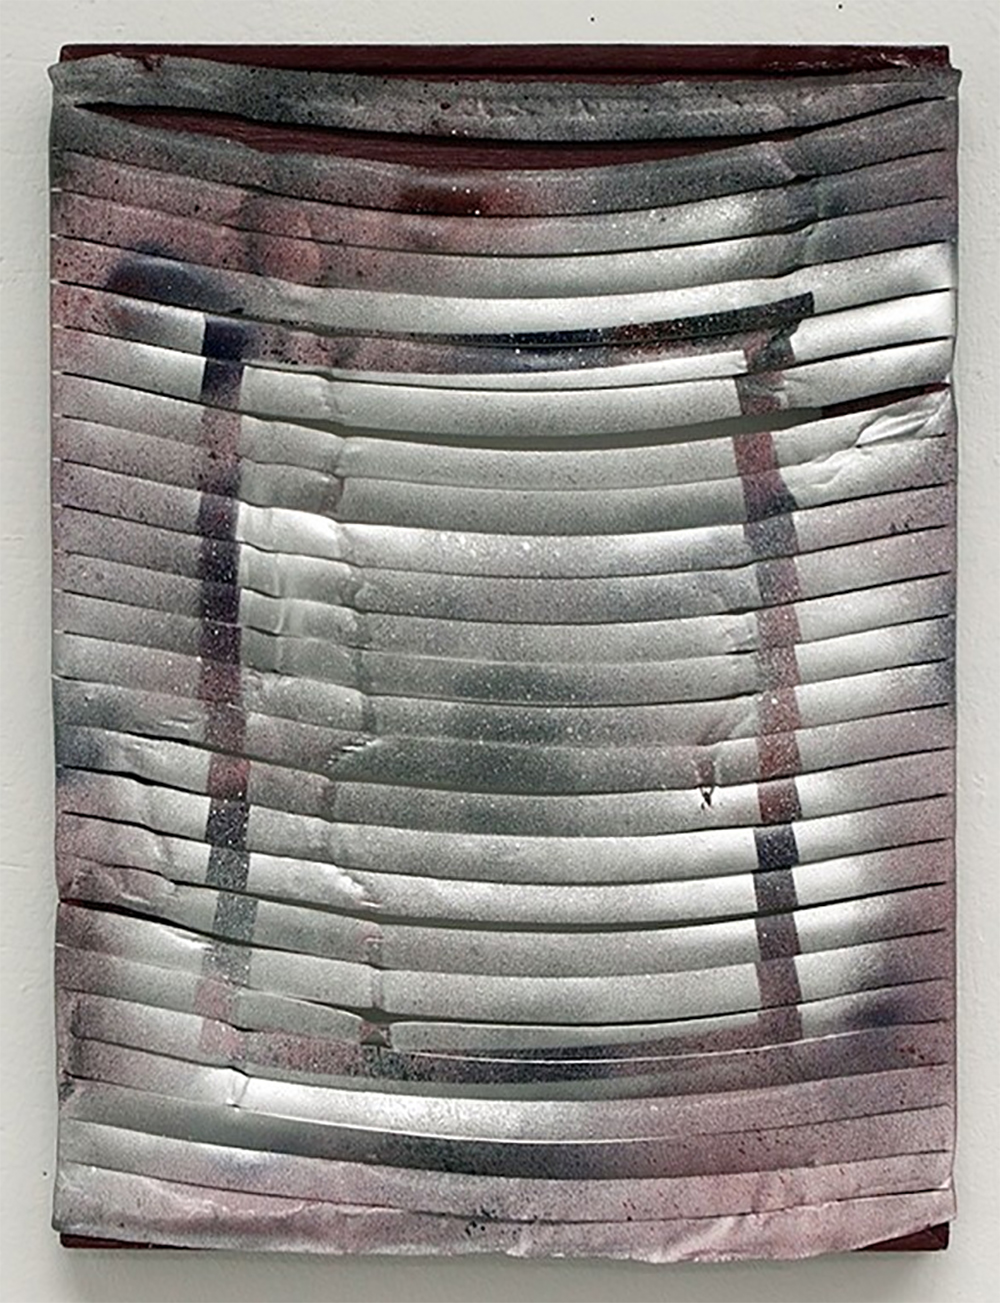  Untitled  Spray paint on enamel skin  14 x 11 in  2011 